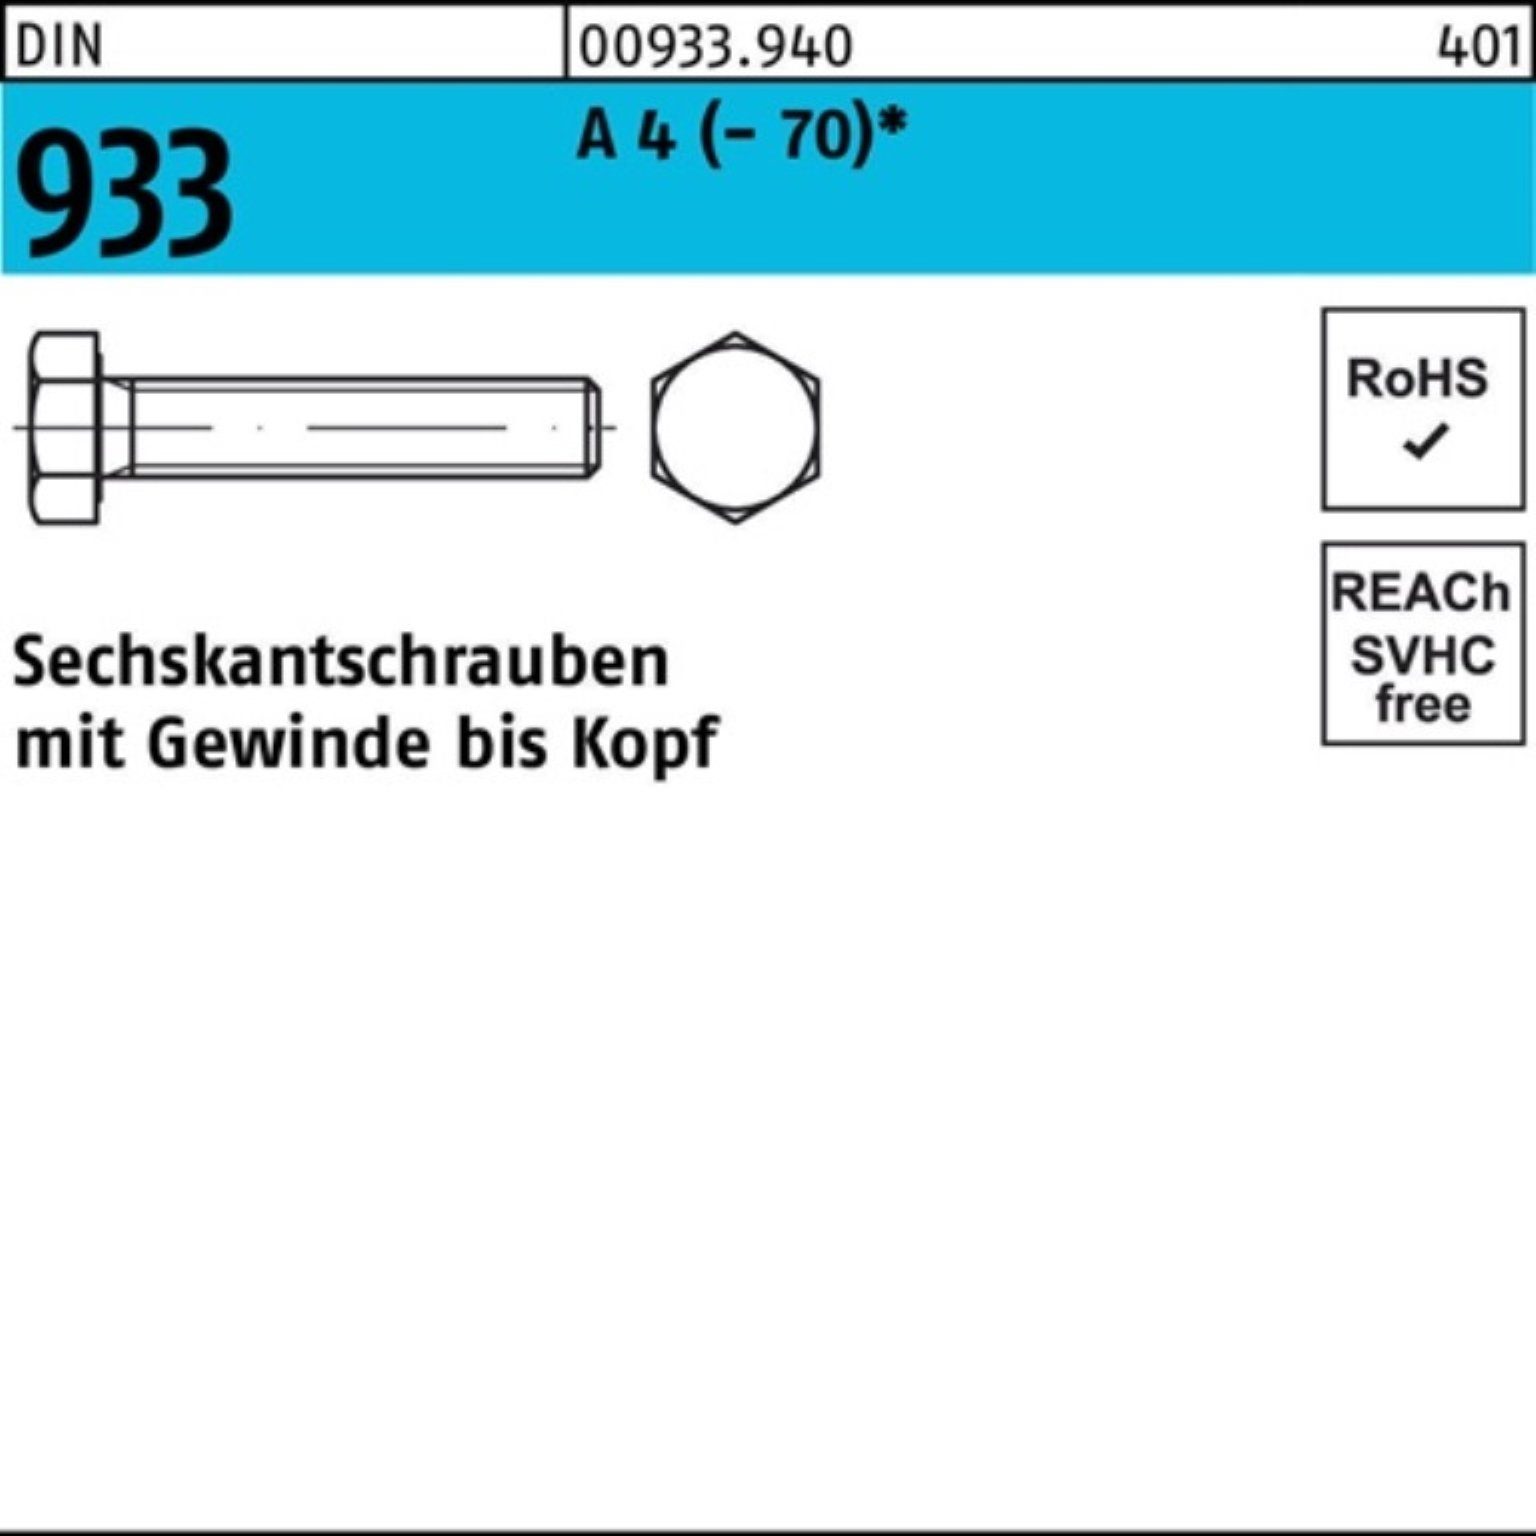 Reyher Sechskantschraube 100er (70) 1 Sechskantschraube Stück 4 933 DIN A Pack VG 140 D M12x